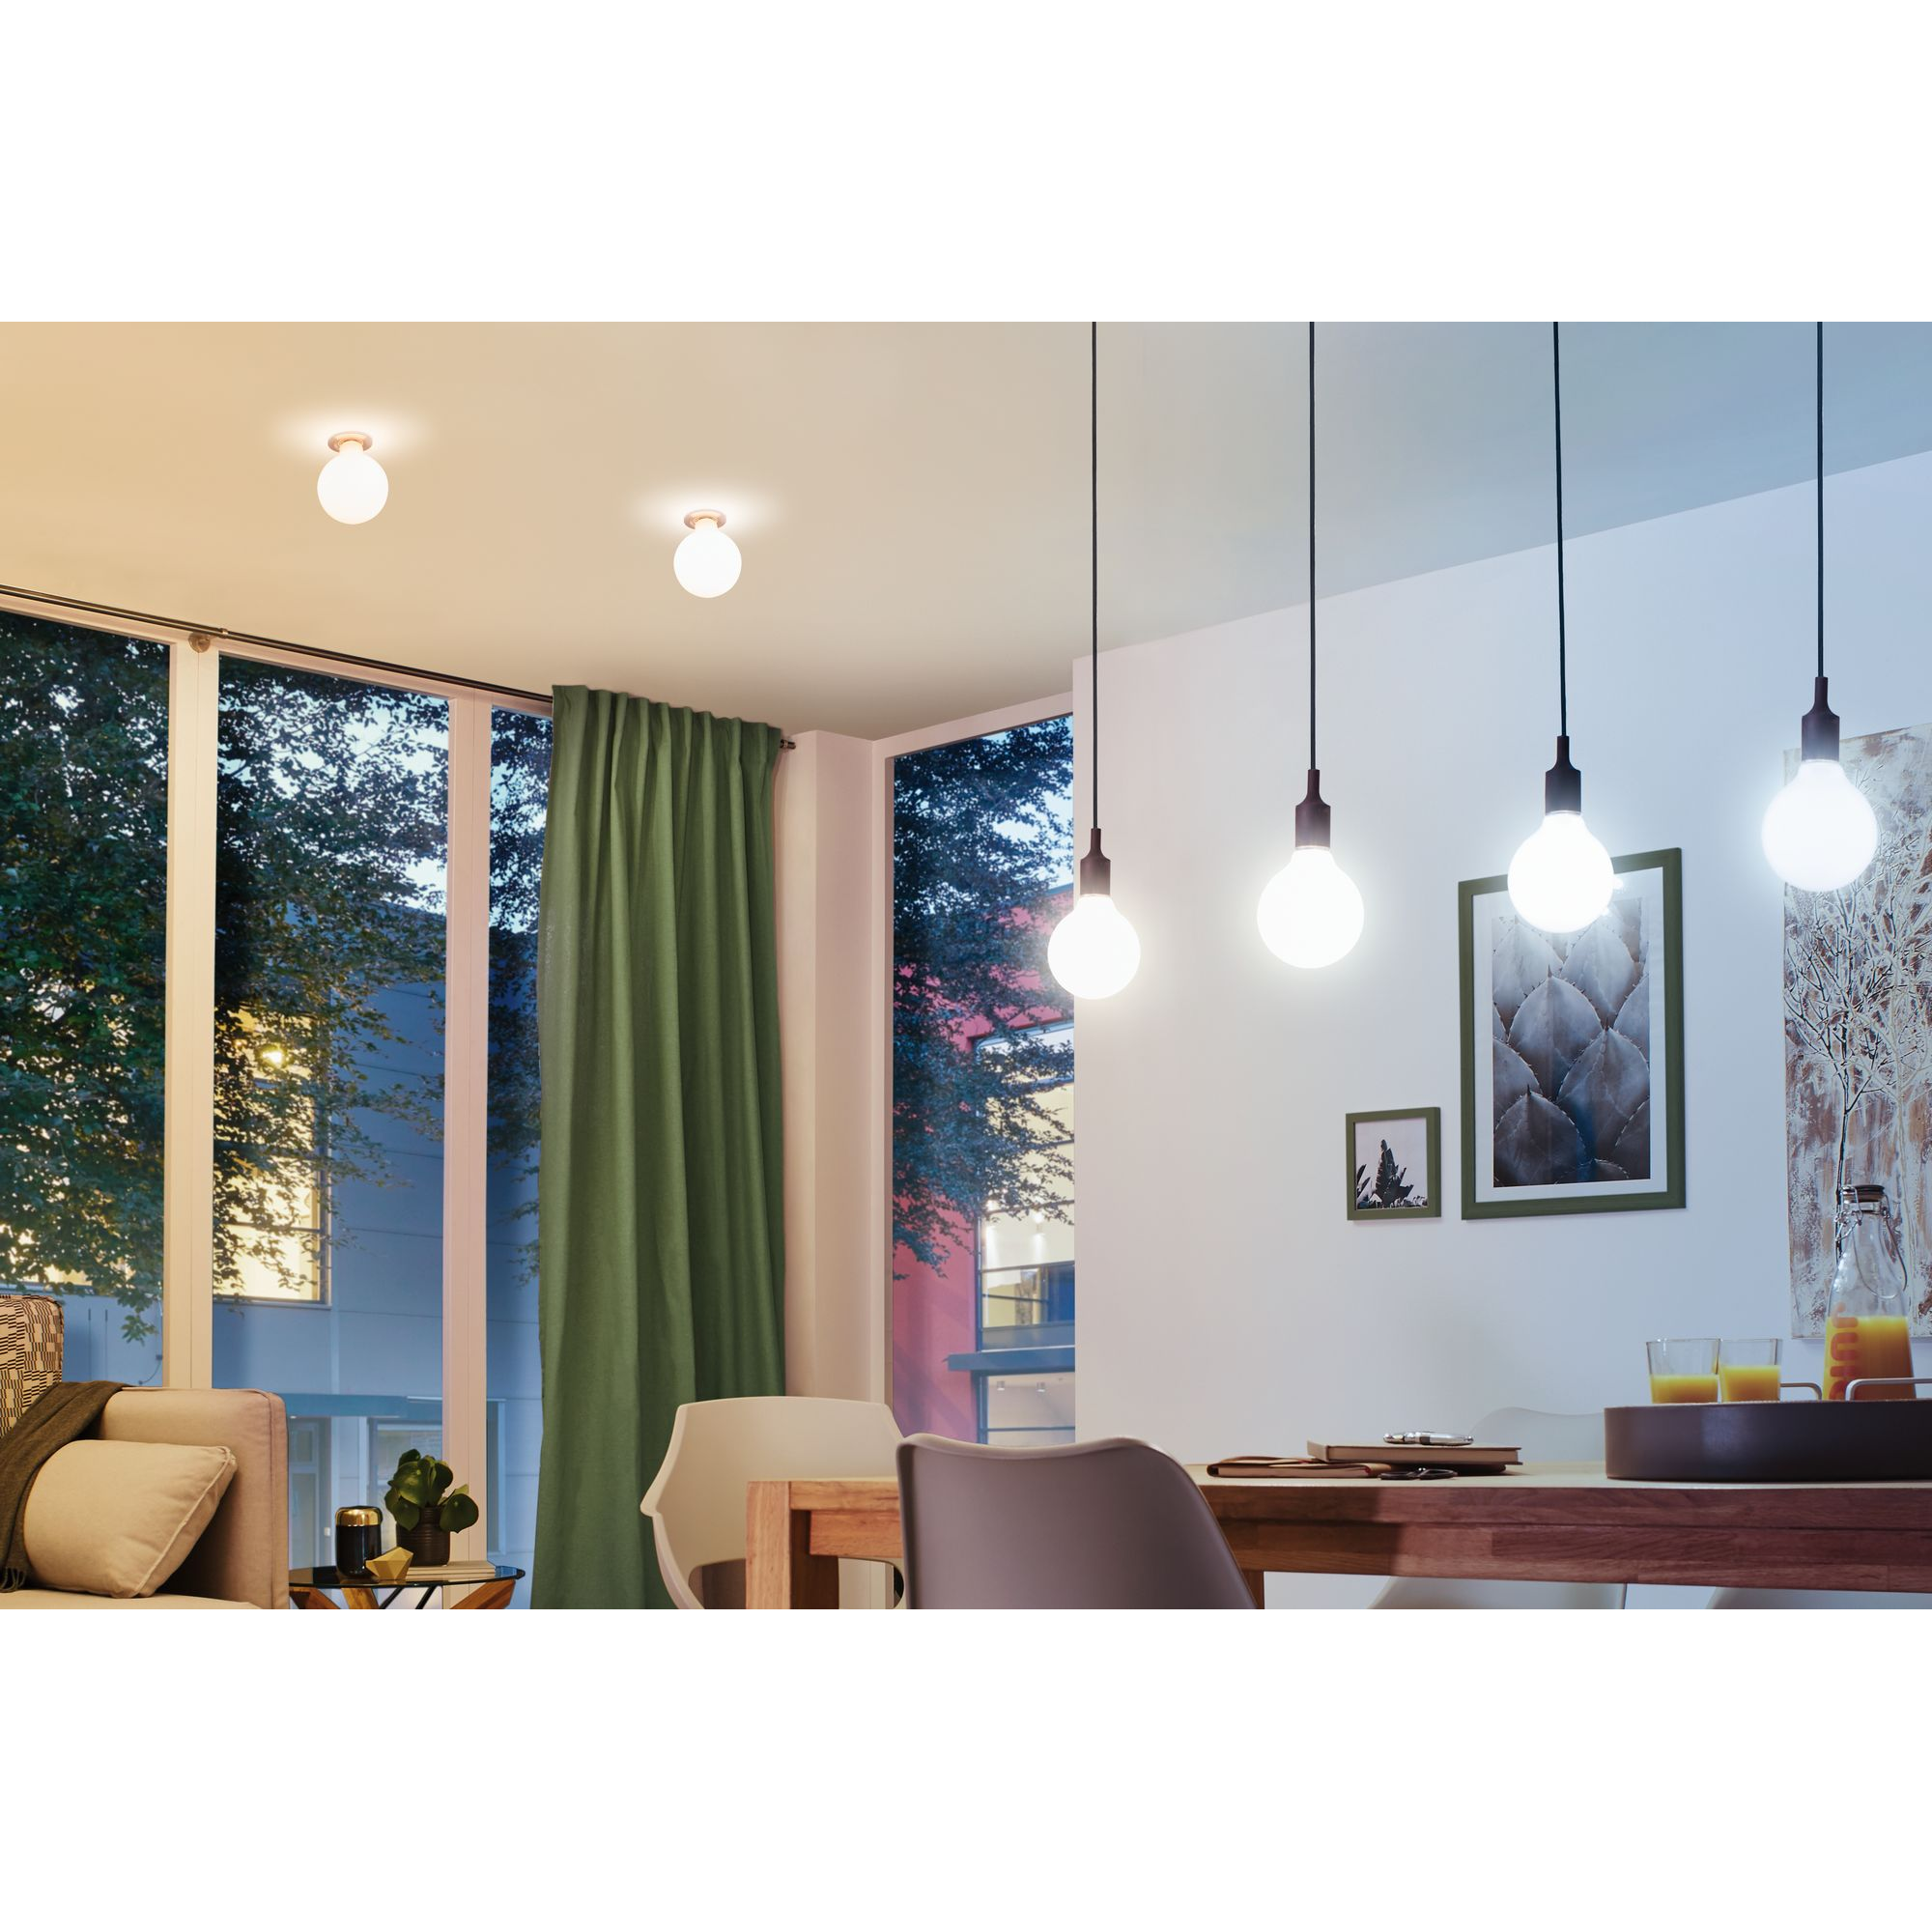 LED-Kolbenlampe ZigBee E27 7W (60W)  806 lm warm/tageslichtweiß klar + product picture